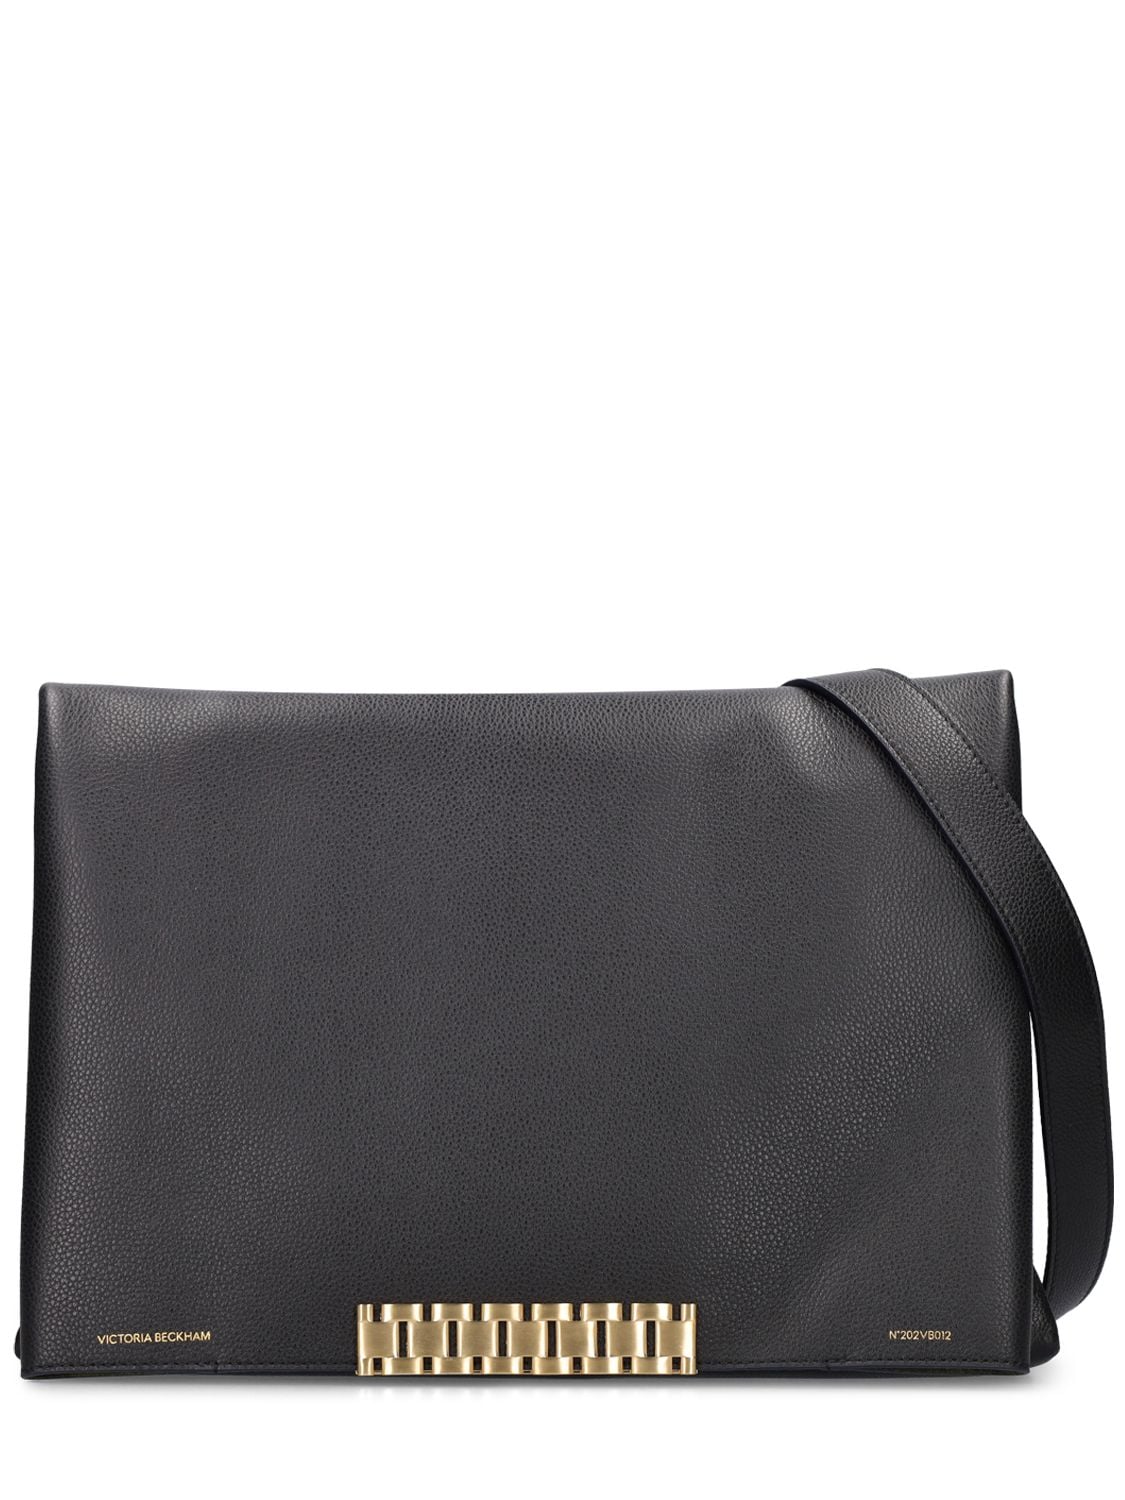 Victoria Beckham Xl Soft Leather Flap Shoulder Bag In Black